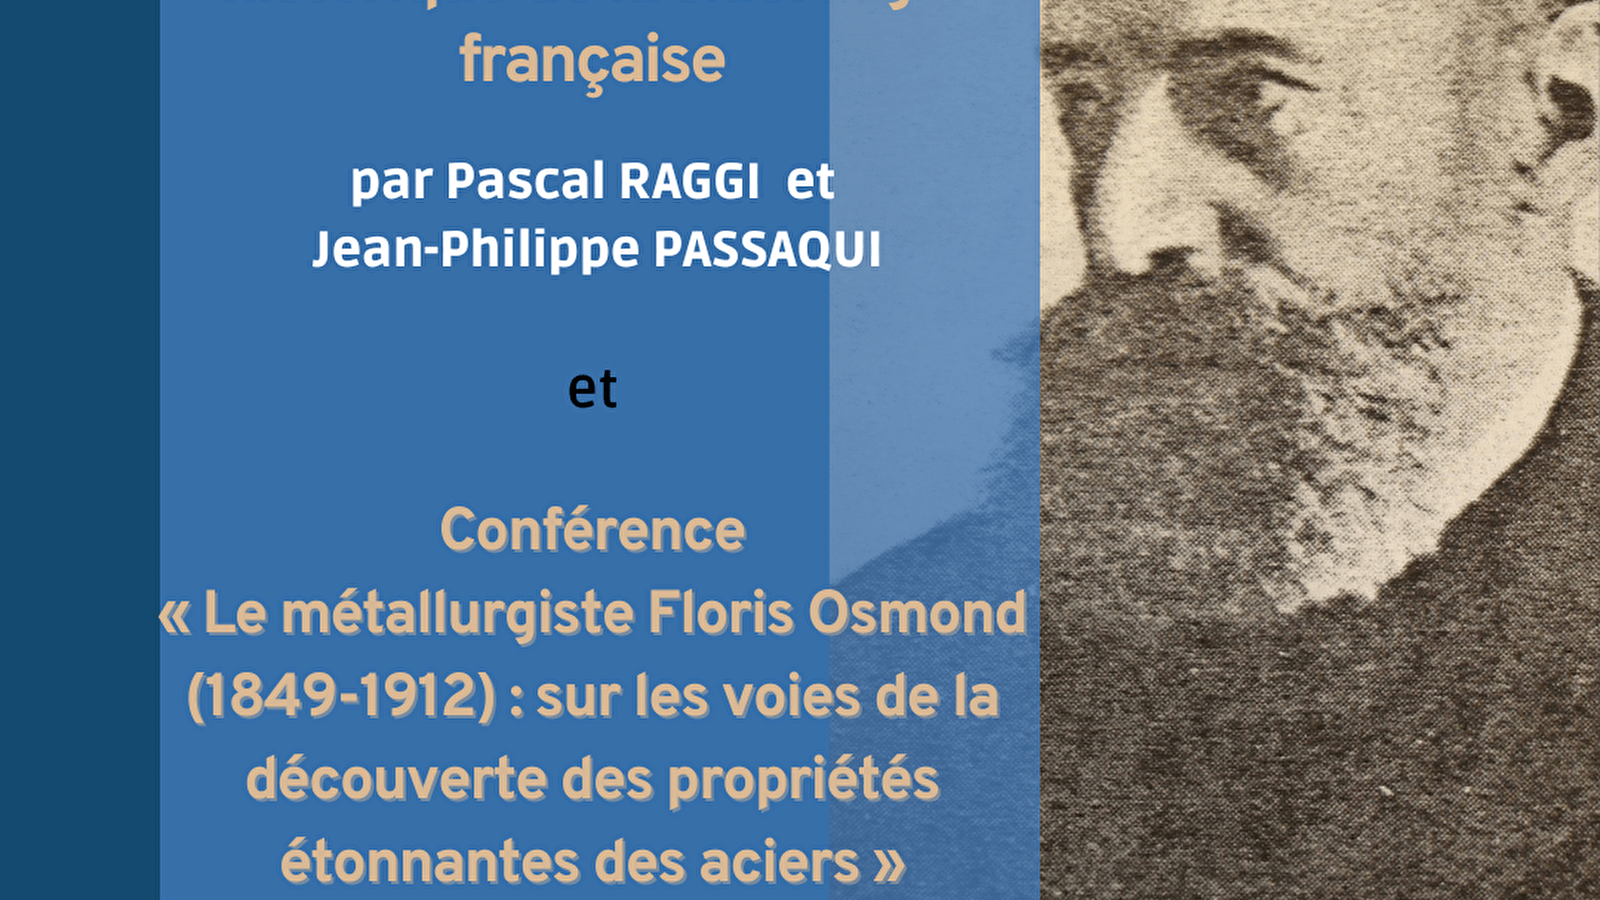 Presentatie van de Dictionnaire de la sidérurgie française en lezing over F. Osmond